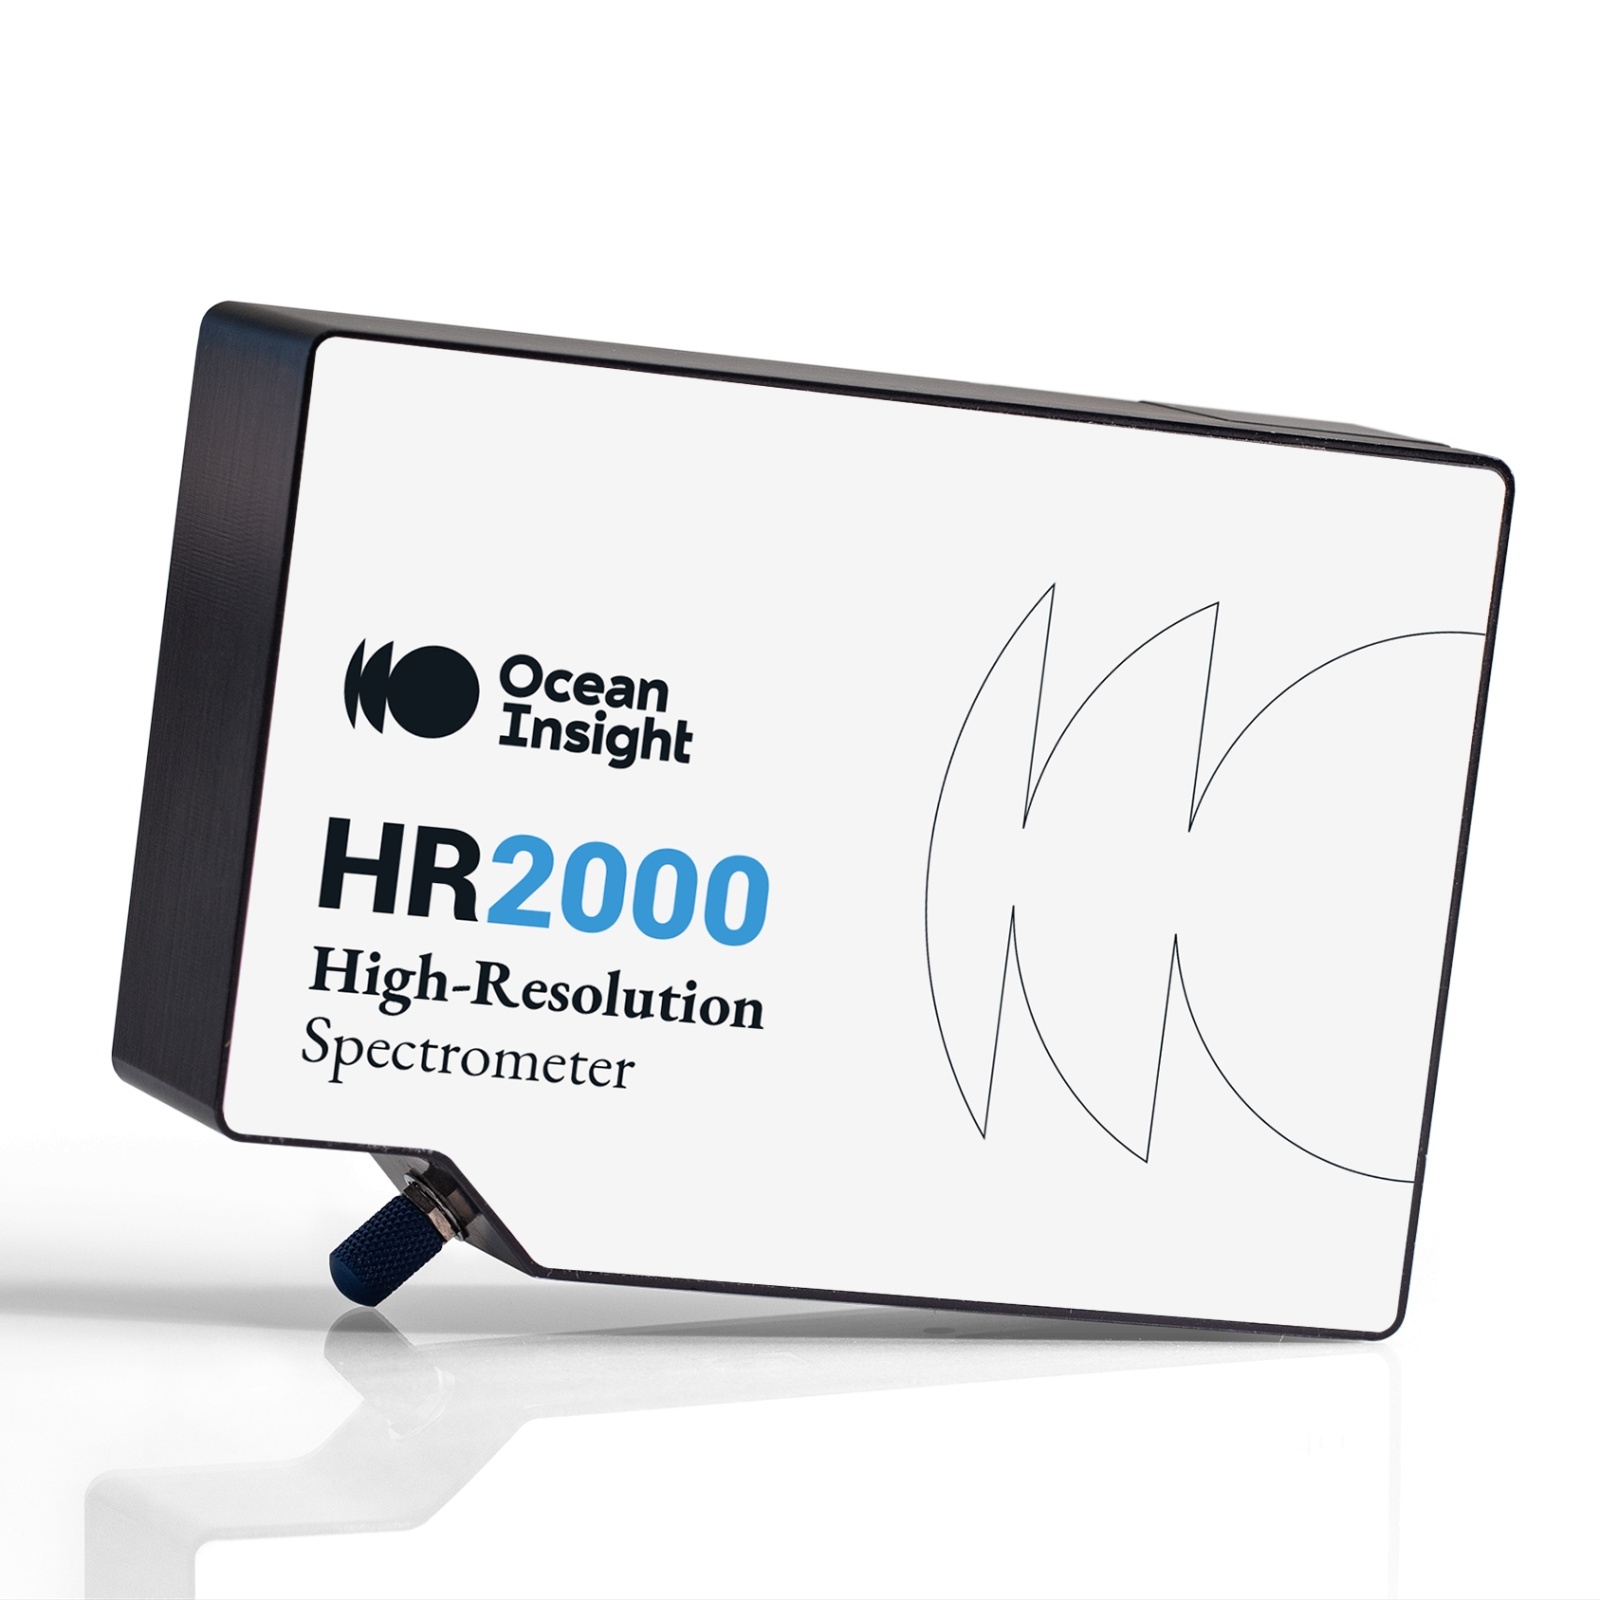 海洋光学高分辨率光谱仪HR2000+的图片